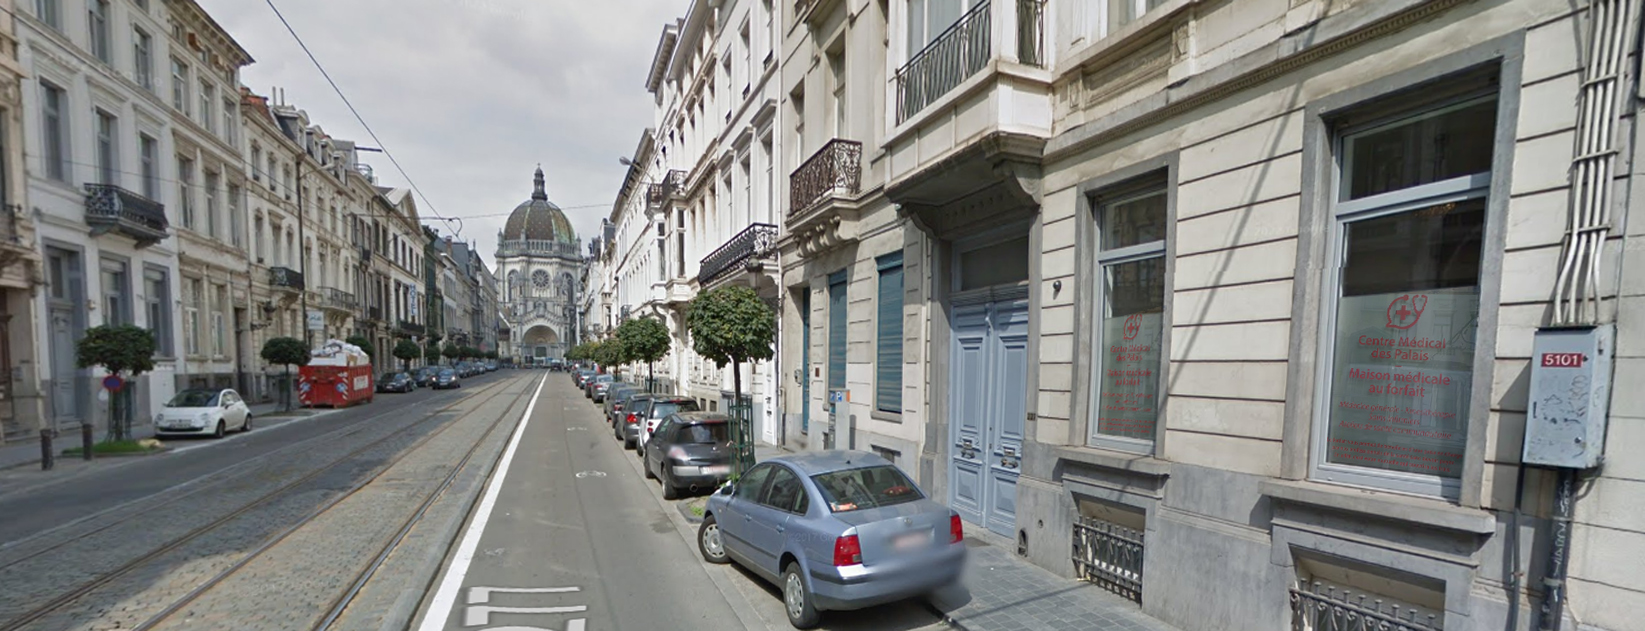 Maison medicale des Palais - Saint-Josse - Schaerbeek - Rue Royale 227 A 1210 Bruxelles